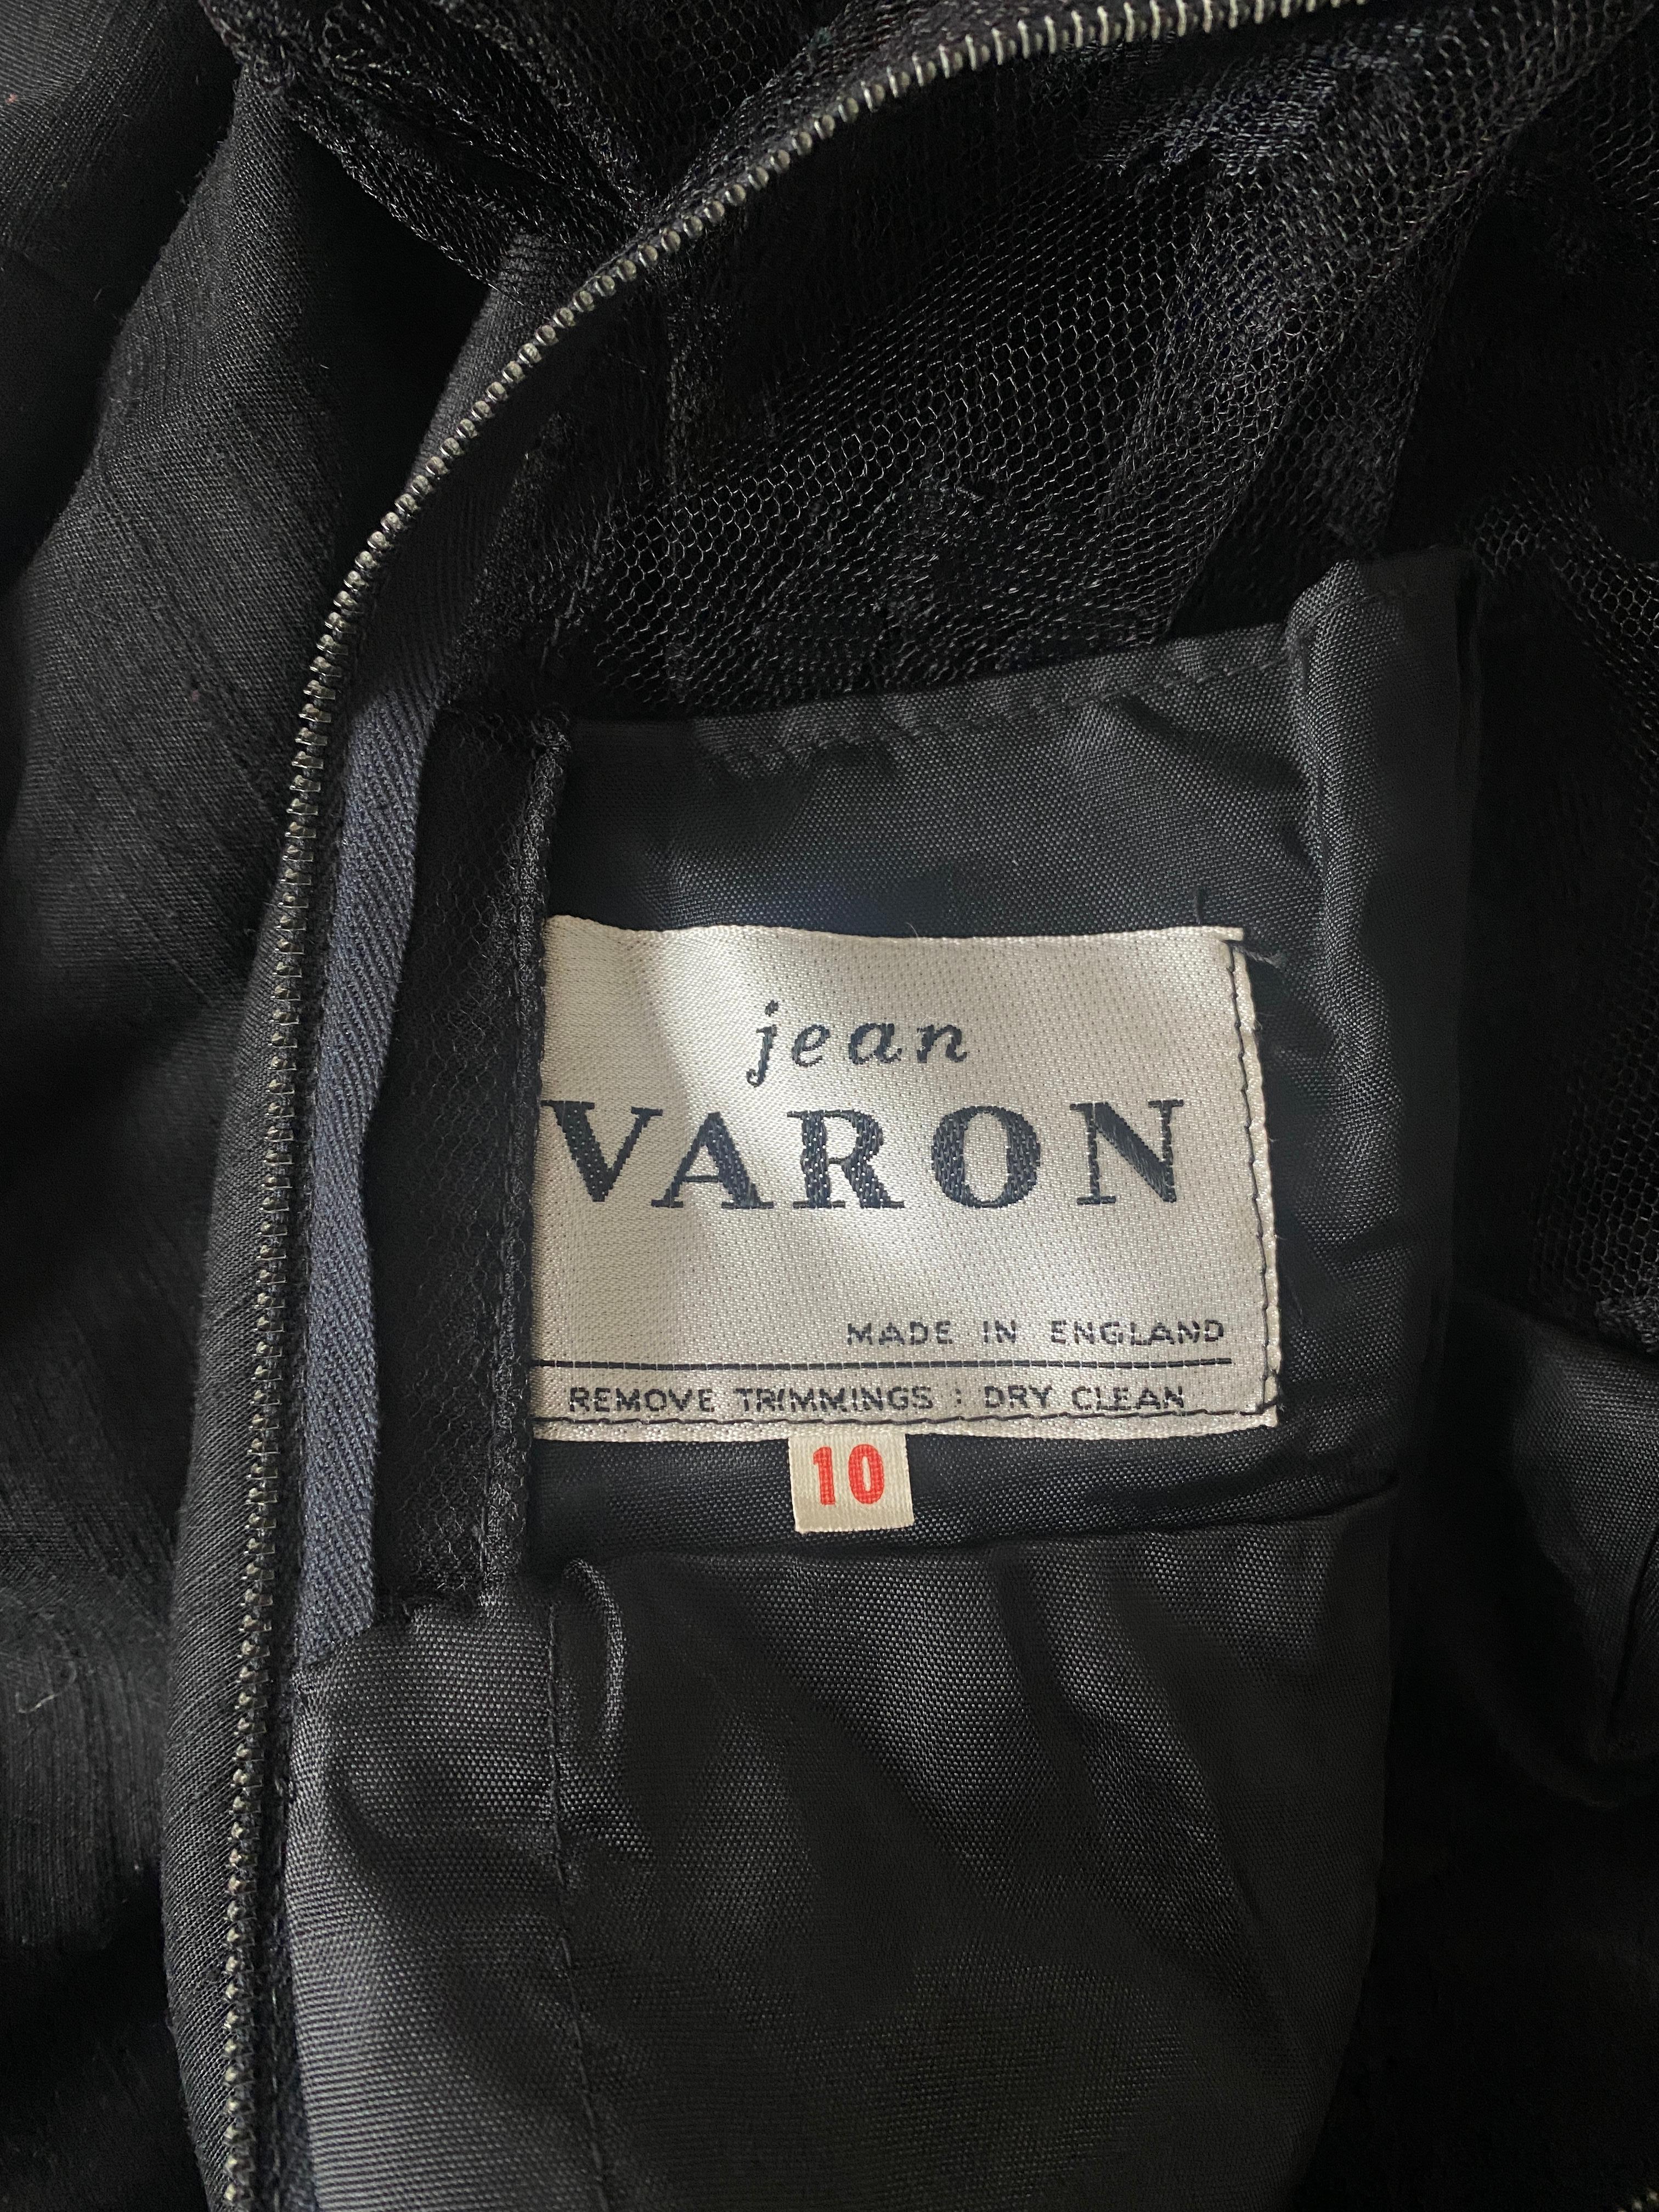 1960s Jean Varon Black Lace Maxi Dress For Sale 1